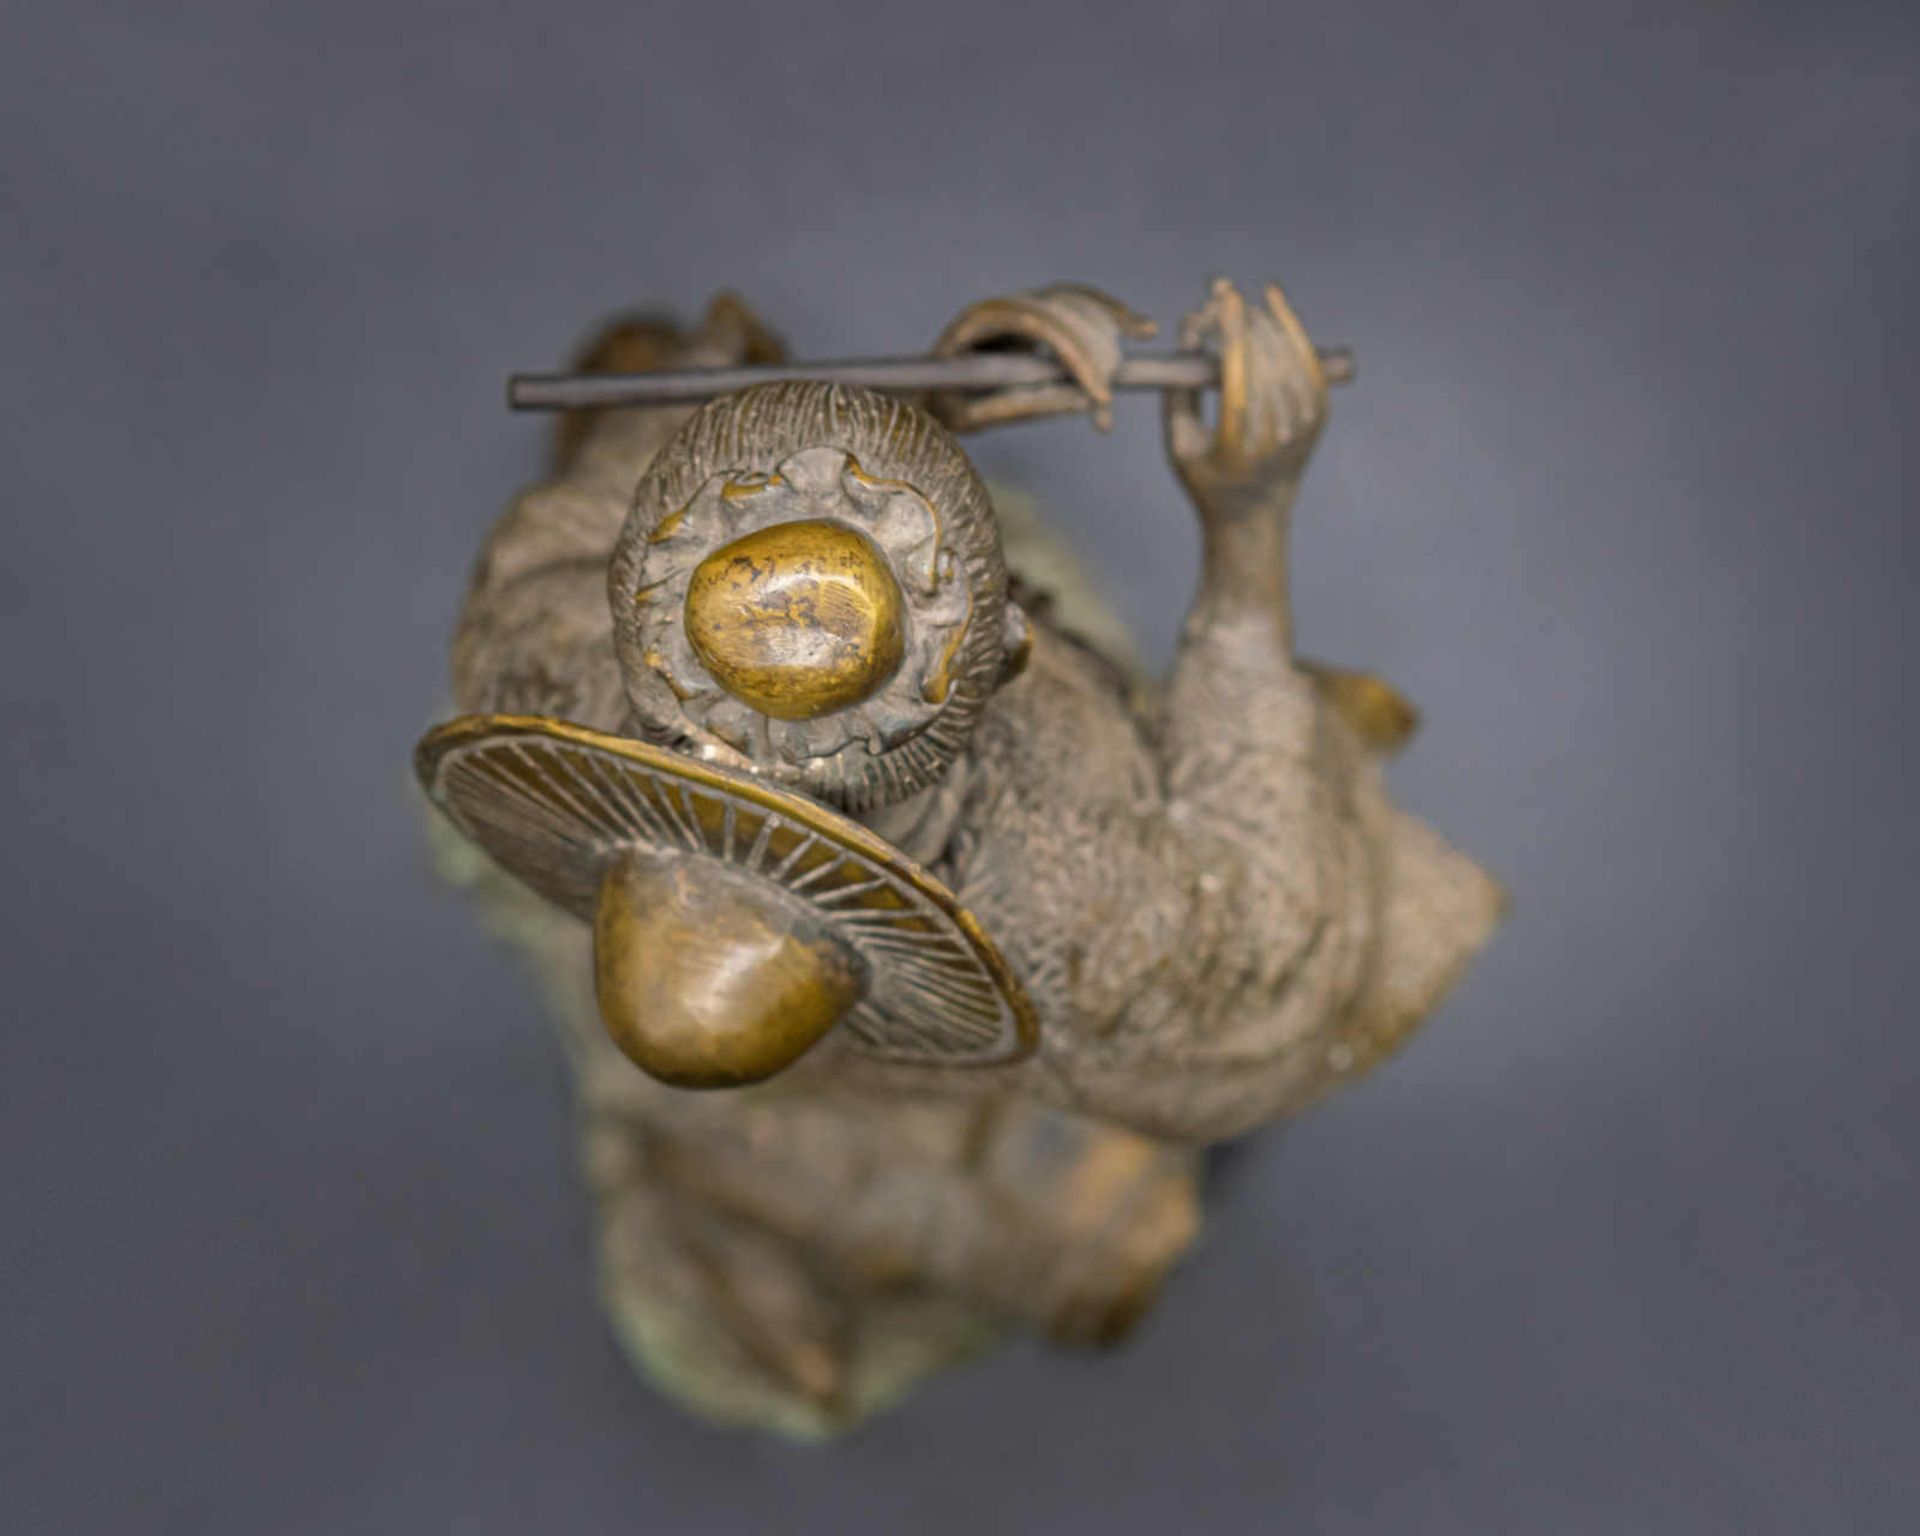 Flötenspielerin auf Kröte, Bronzeguss wohl China, Höhe 43 cm, Gewicht 4,84 Kg. - Image 6 of 6